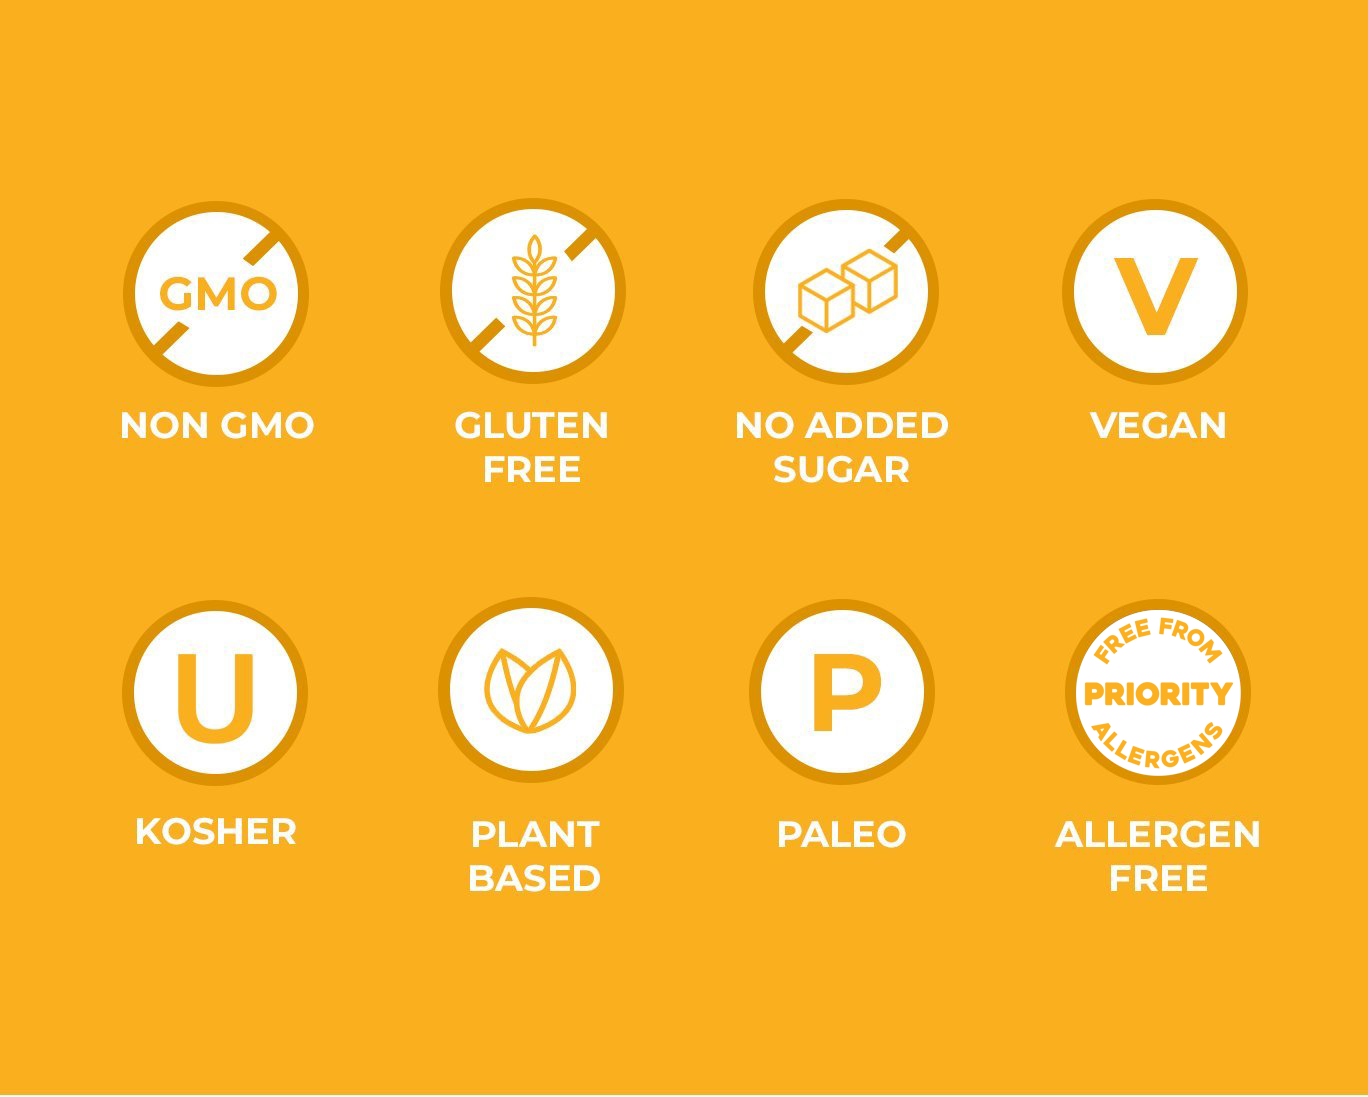 Non GMO, Gluten Free, No Added Sugar, Vegan, Kosher, Plant-Based, Paleo, Allergen Free